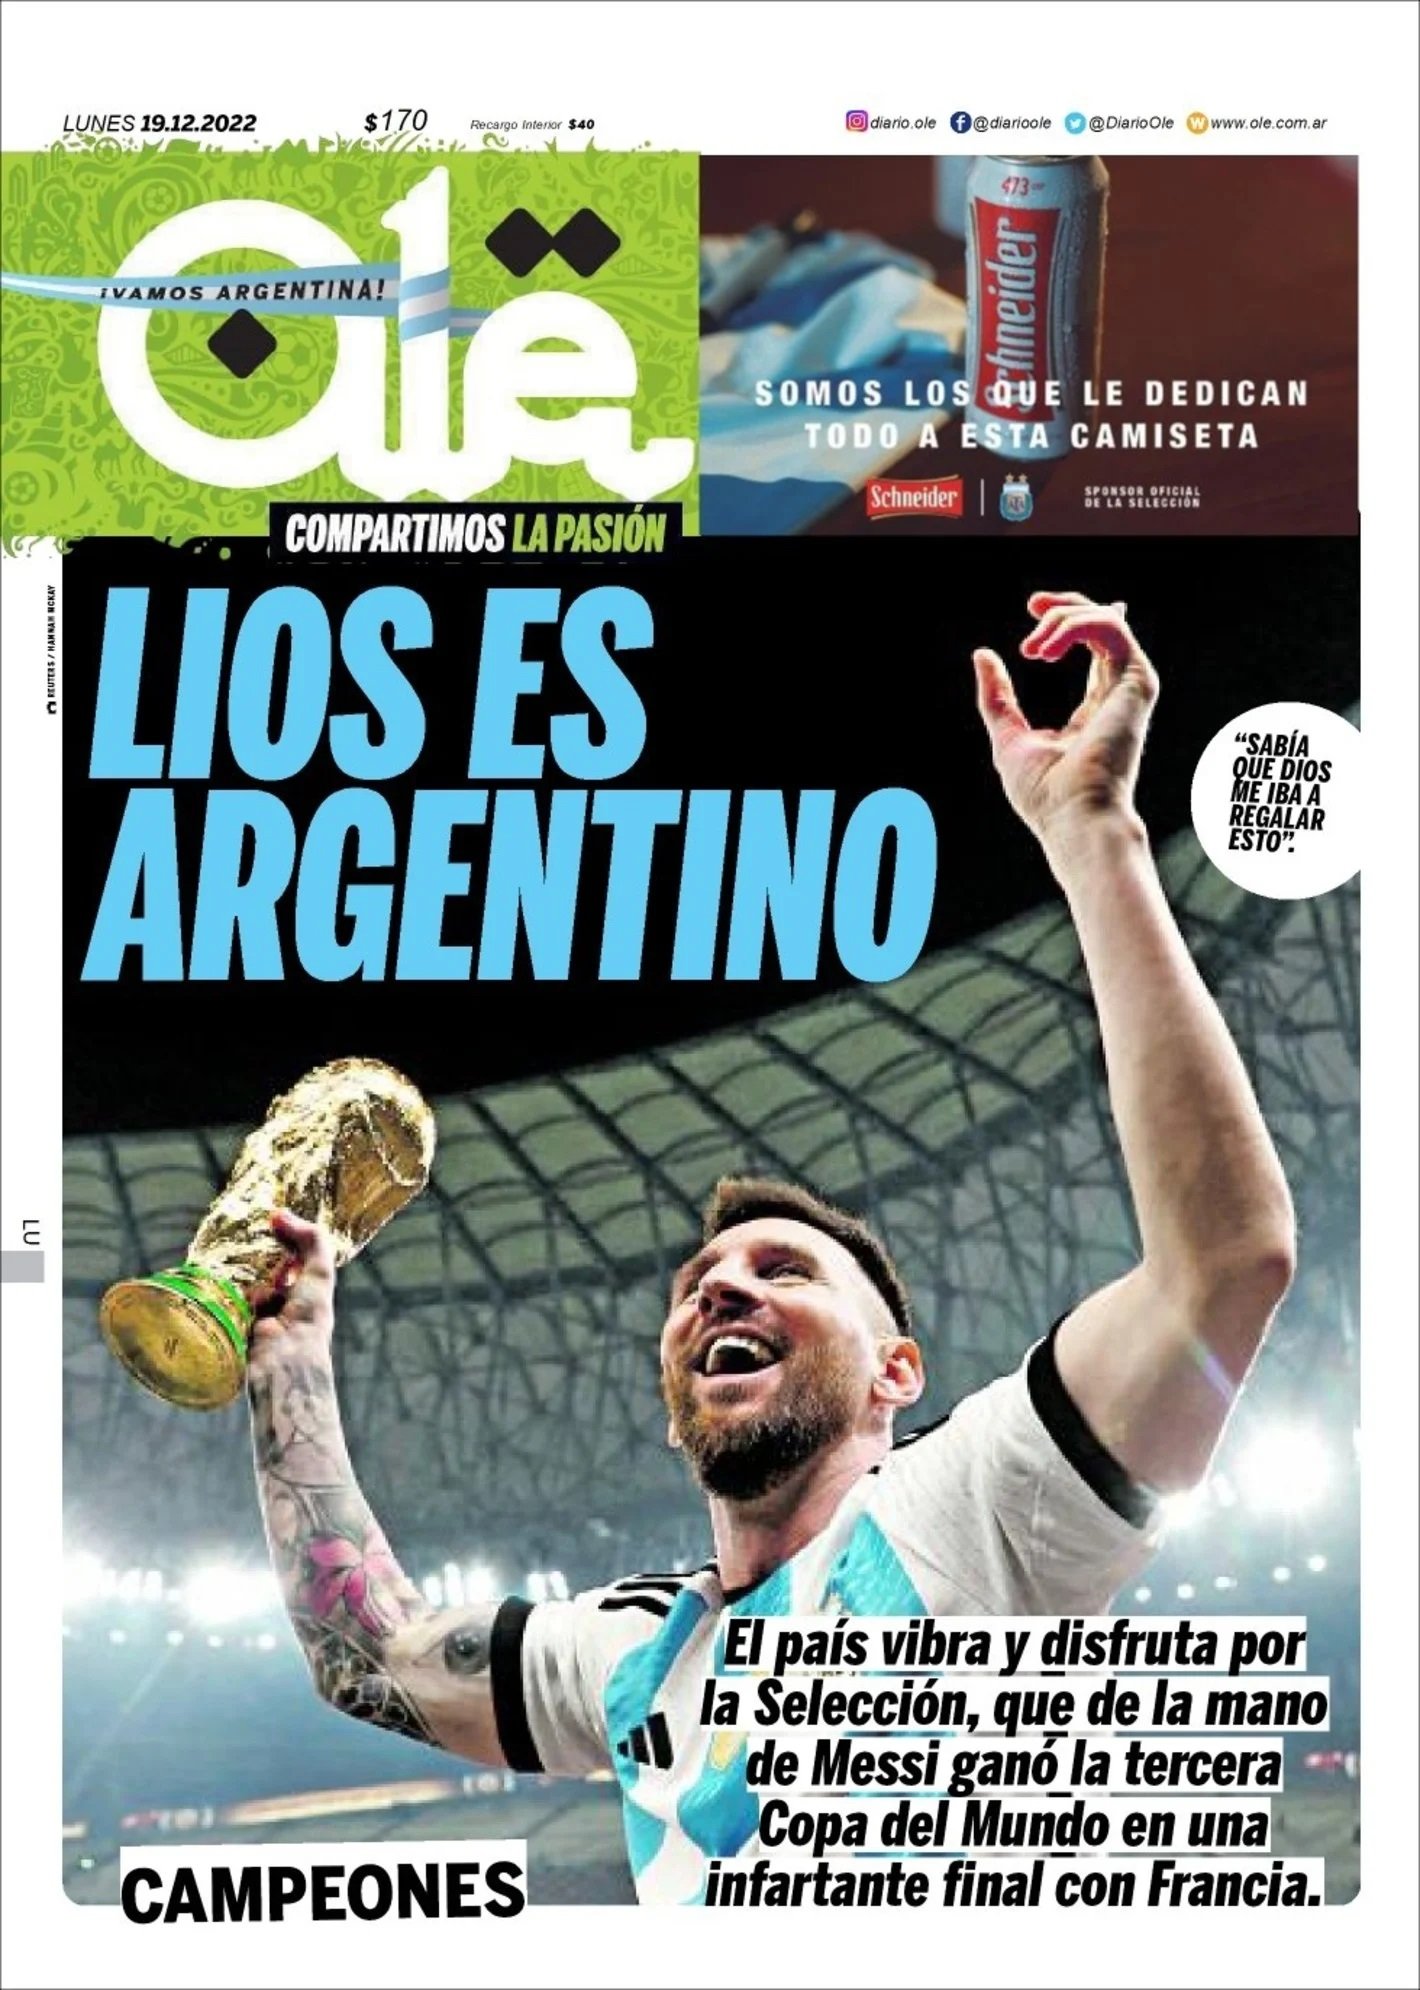 Ole Portada Mundial Qatar 2022 Argentina Leo Messi 19 12 2022